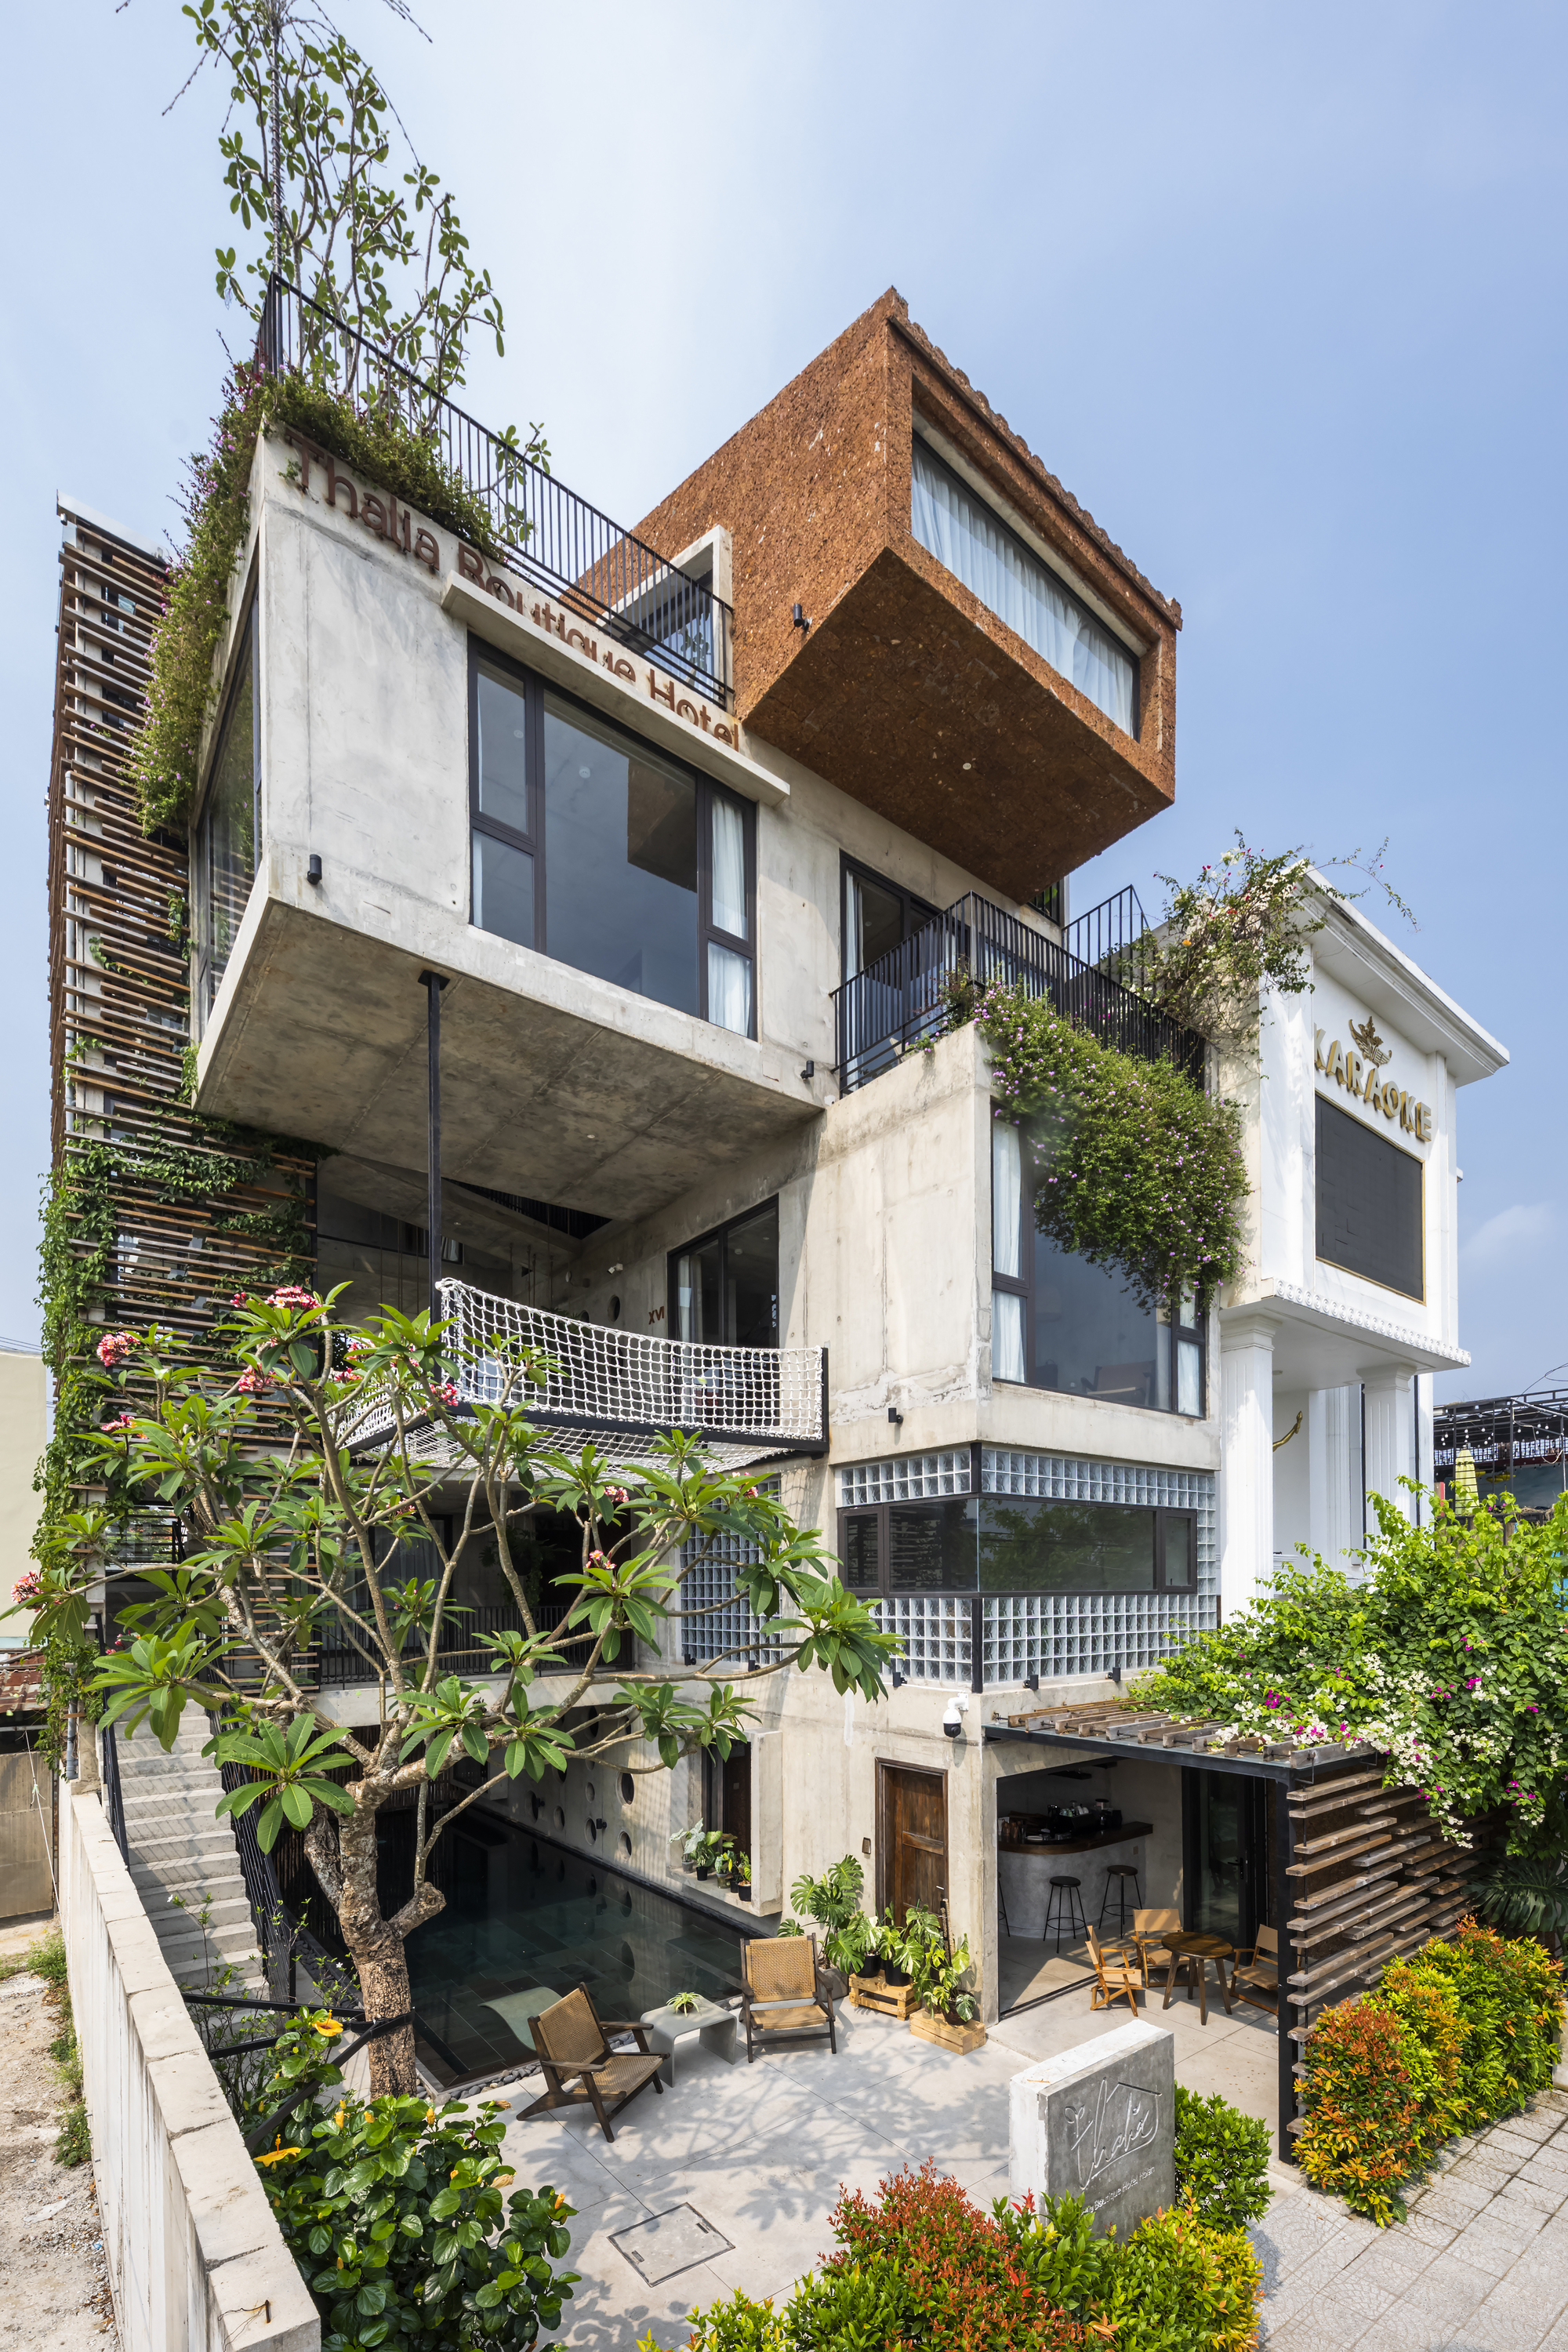 渔网连接悬浮水泥盒，Thalia 精品酒店 / Ho Khue Architects|ART-Arrakis | 建筑室内设计的创新与灵感